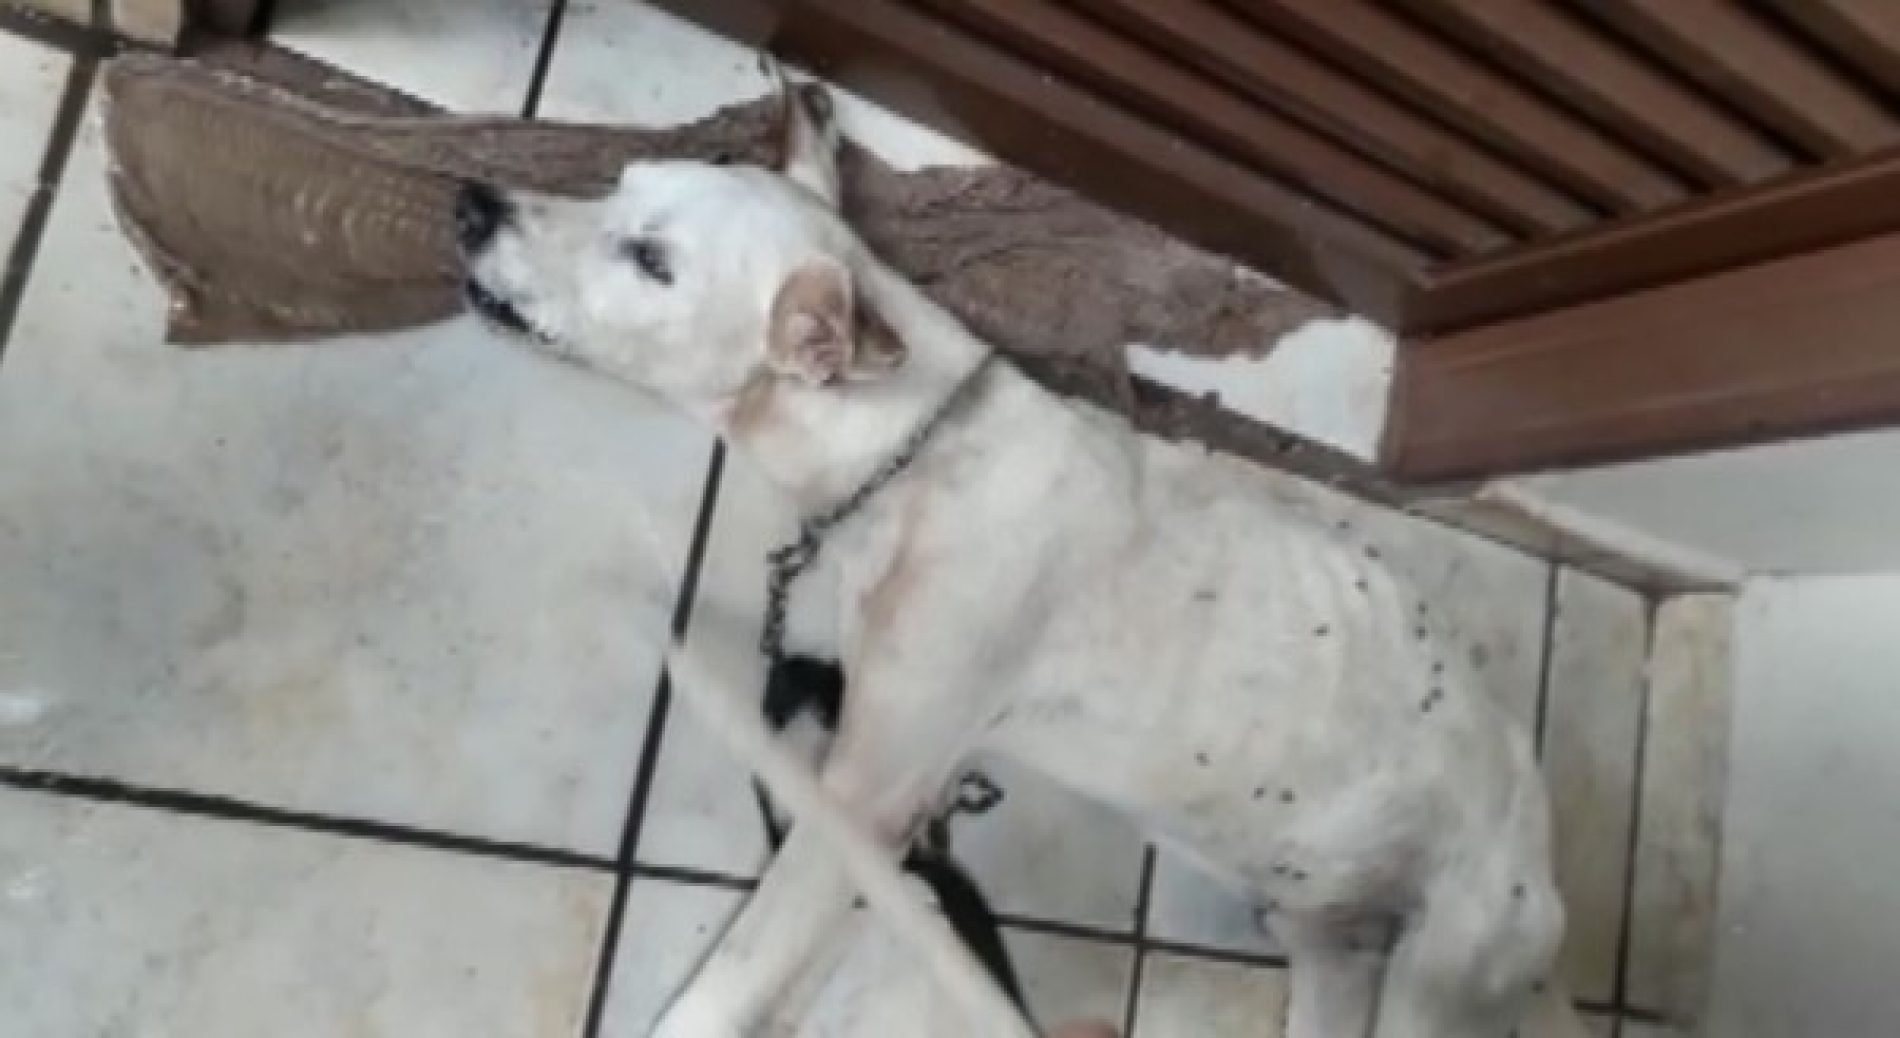 REGIÃO: Casal suspeito de maus-tratos culpa amigo por morte de cachorro